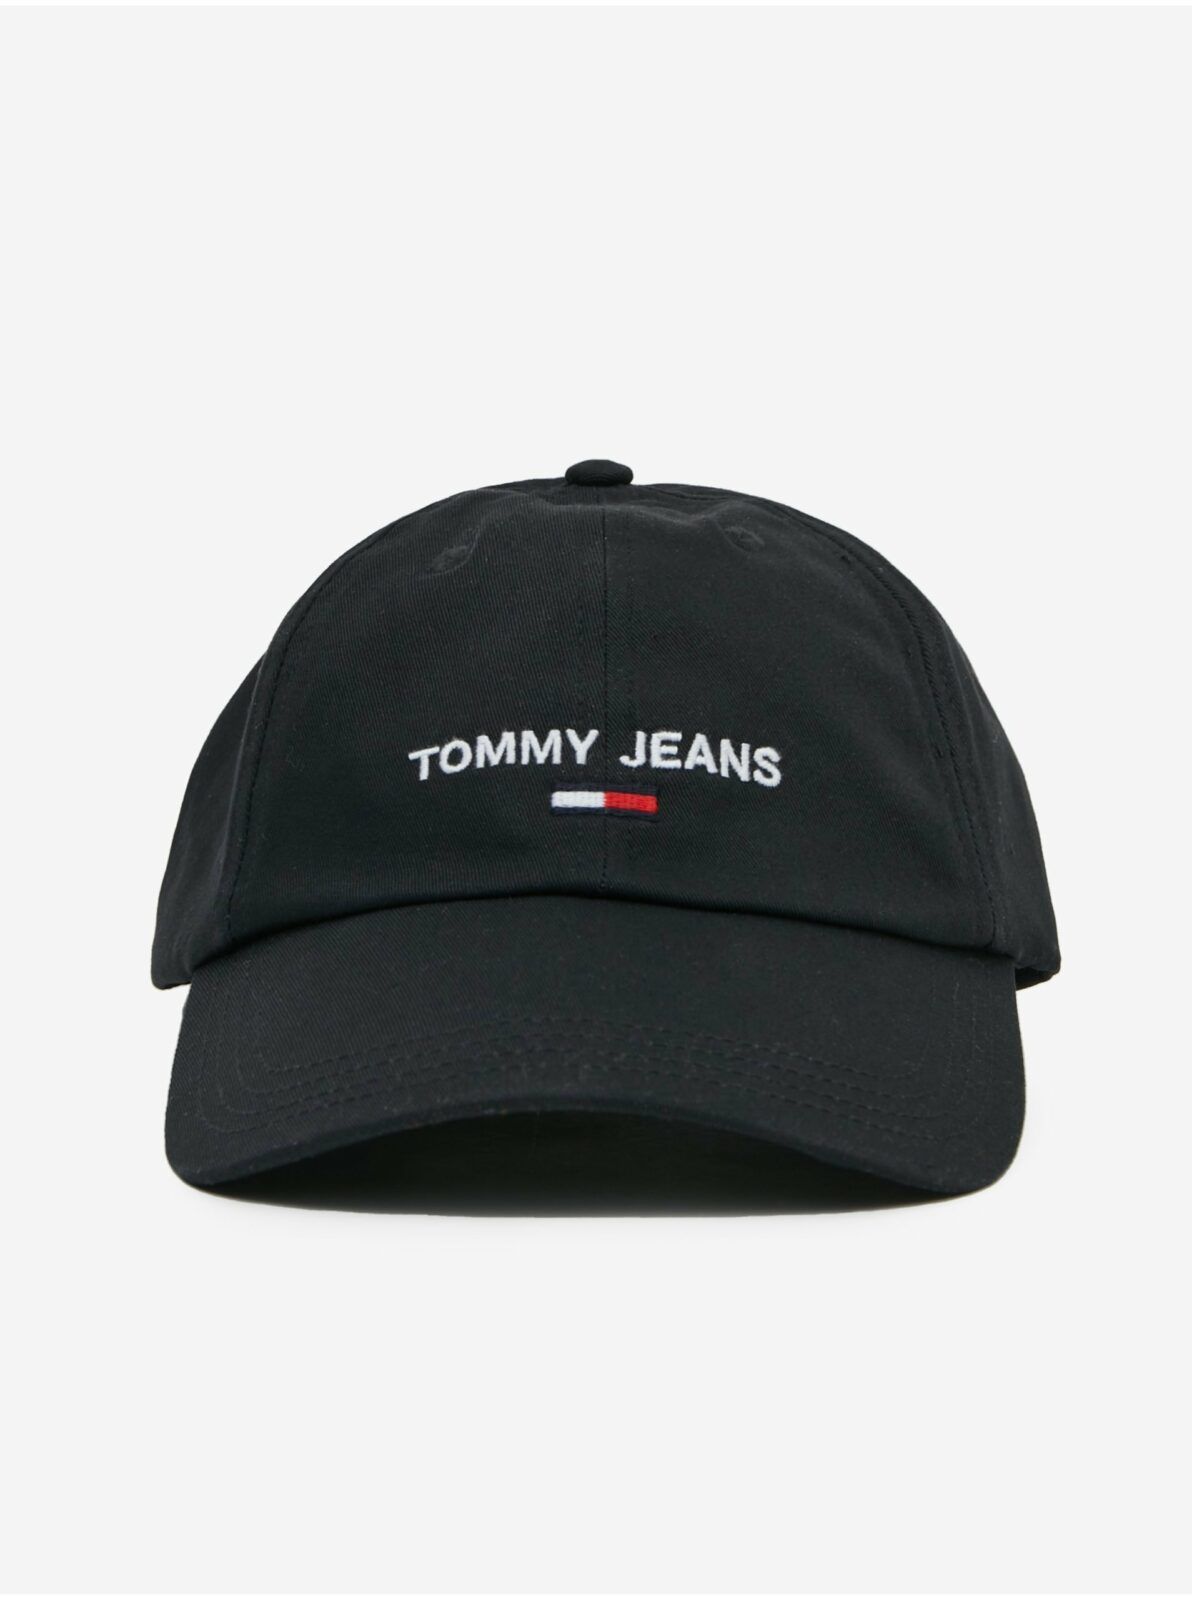 Černá dámská kšiltovka Tommy Jeans